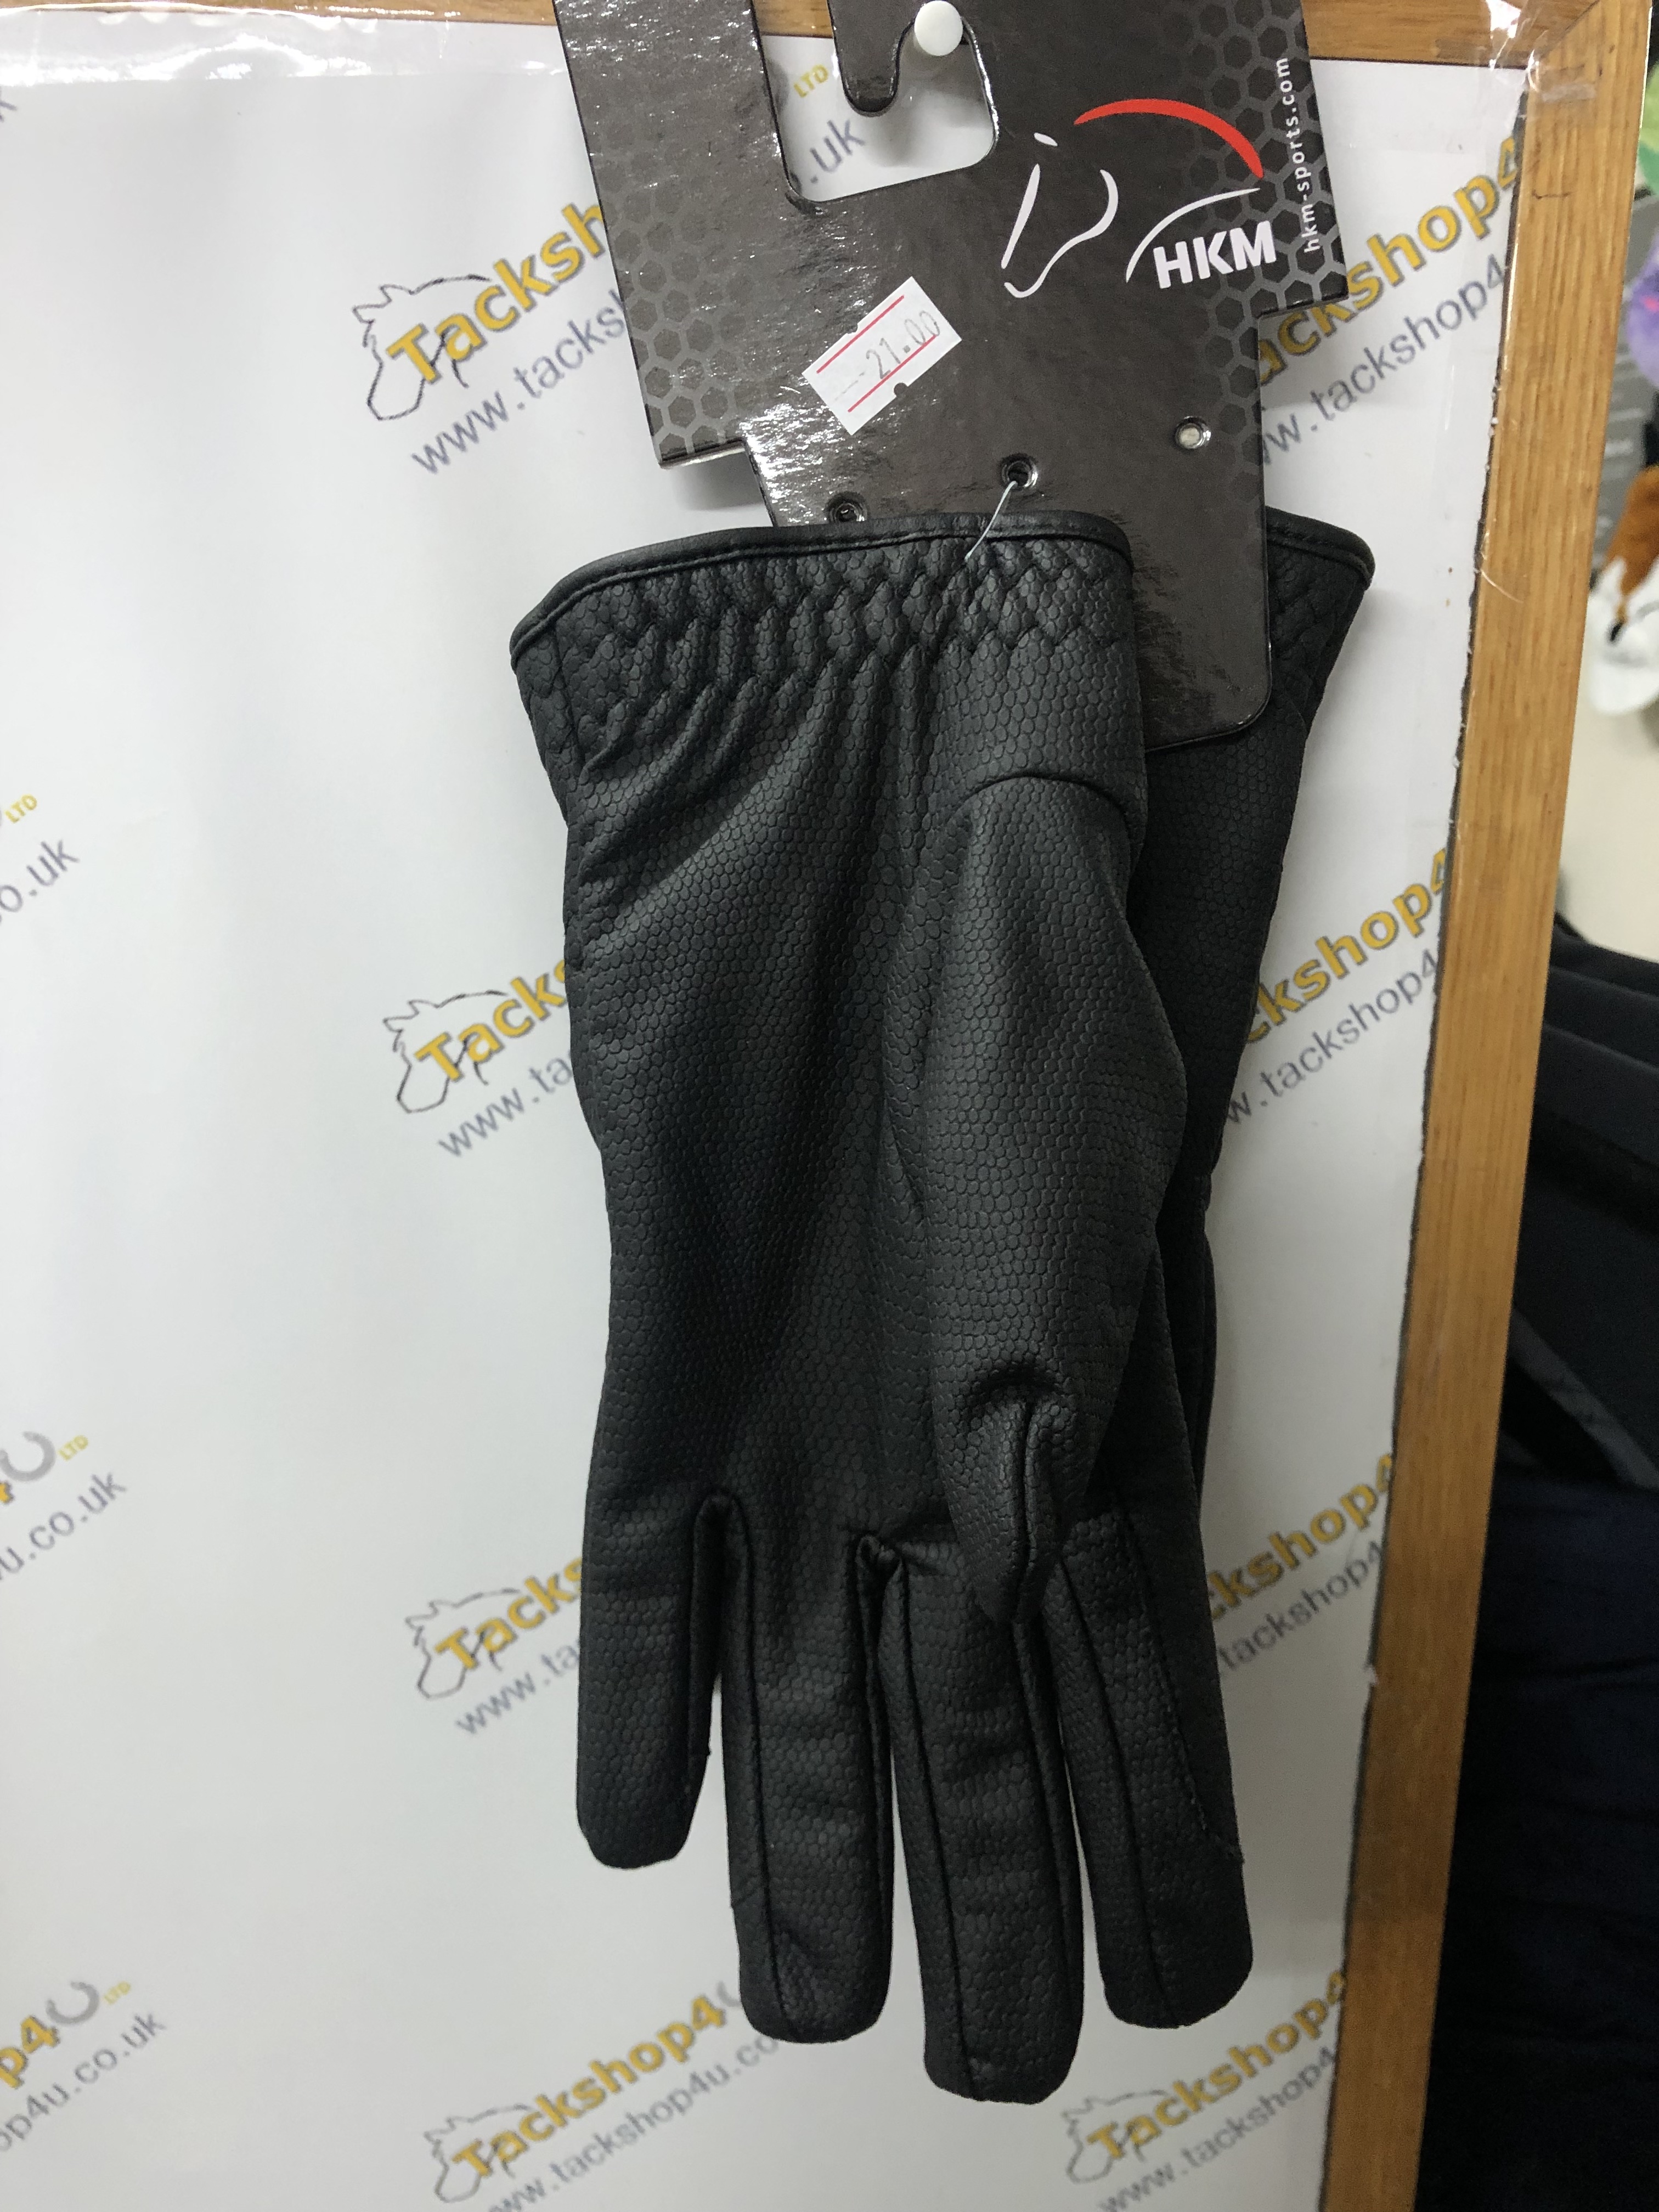 HKM Black Gloves